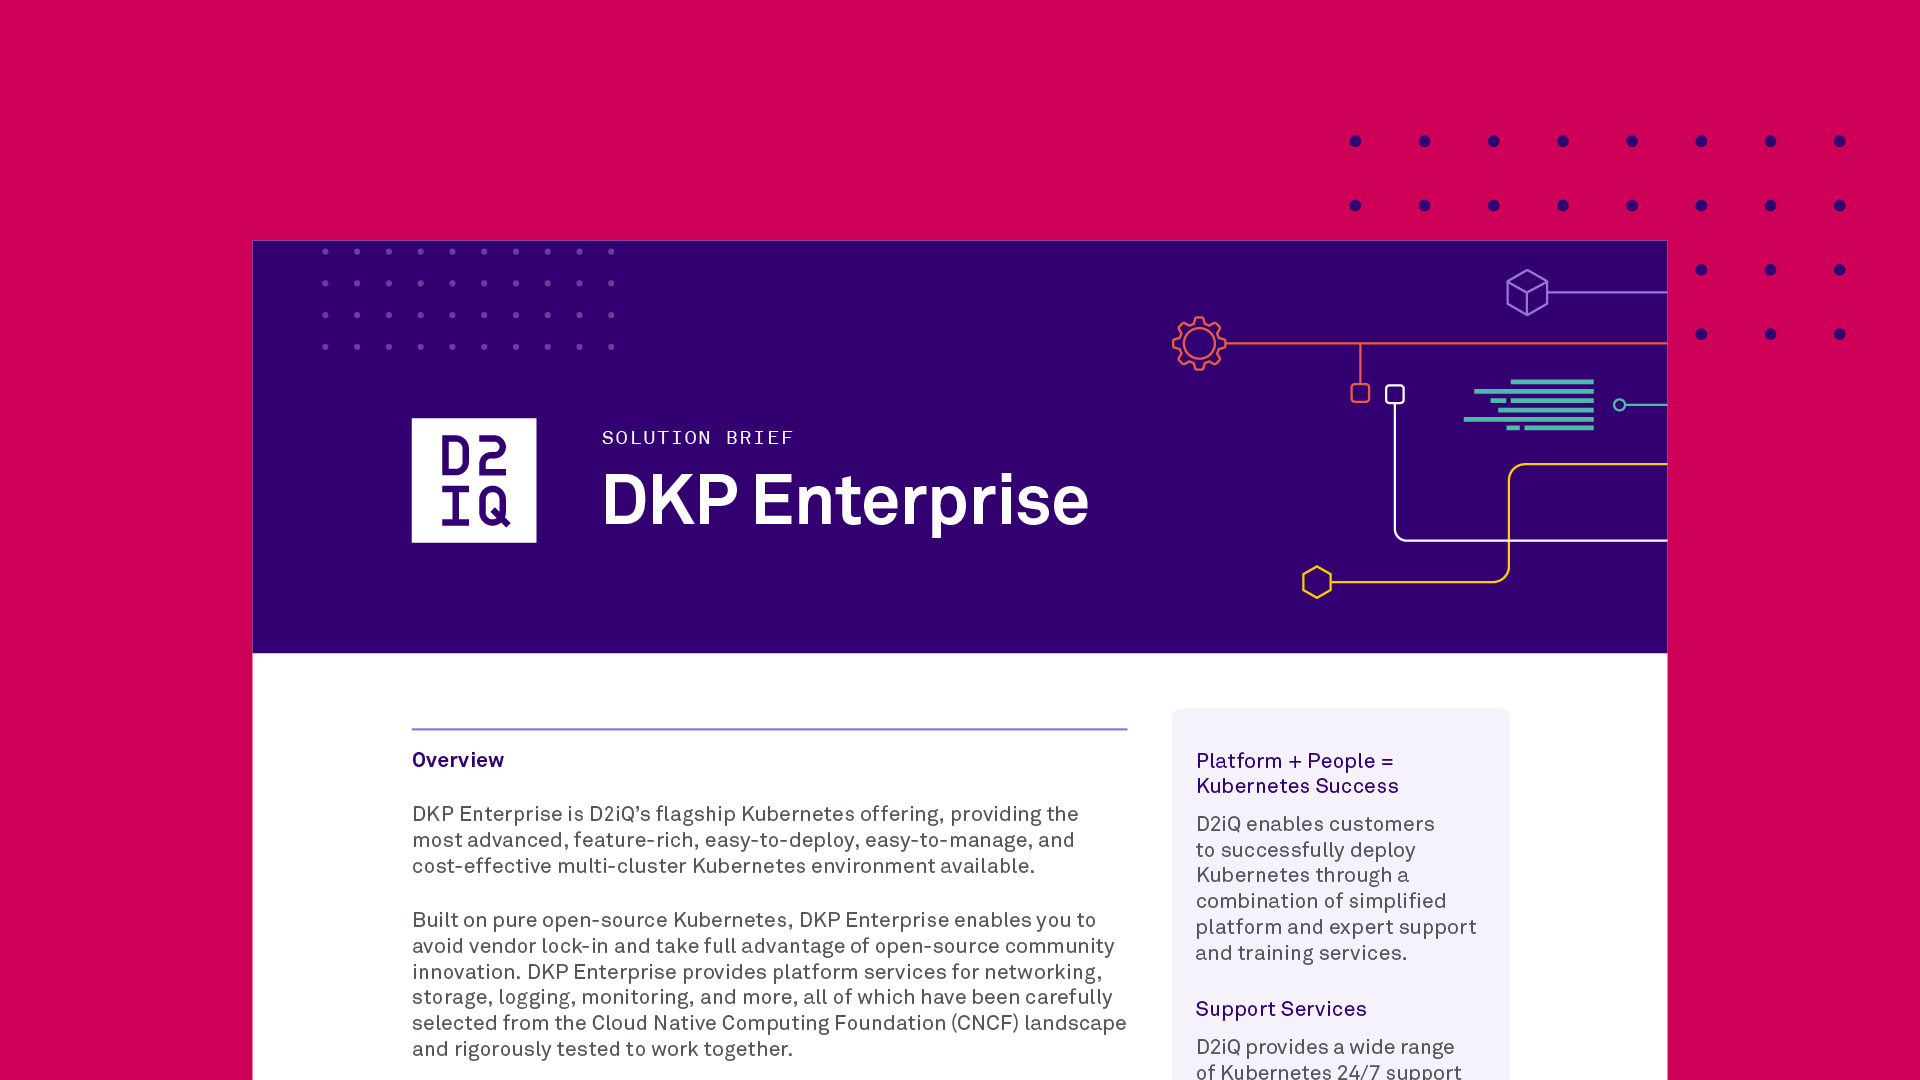 DKP Enterprise: Solution Brief